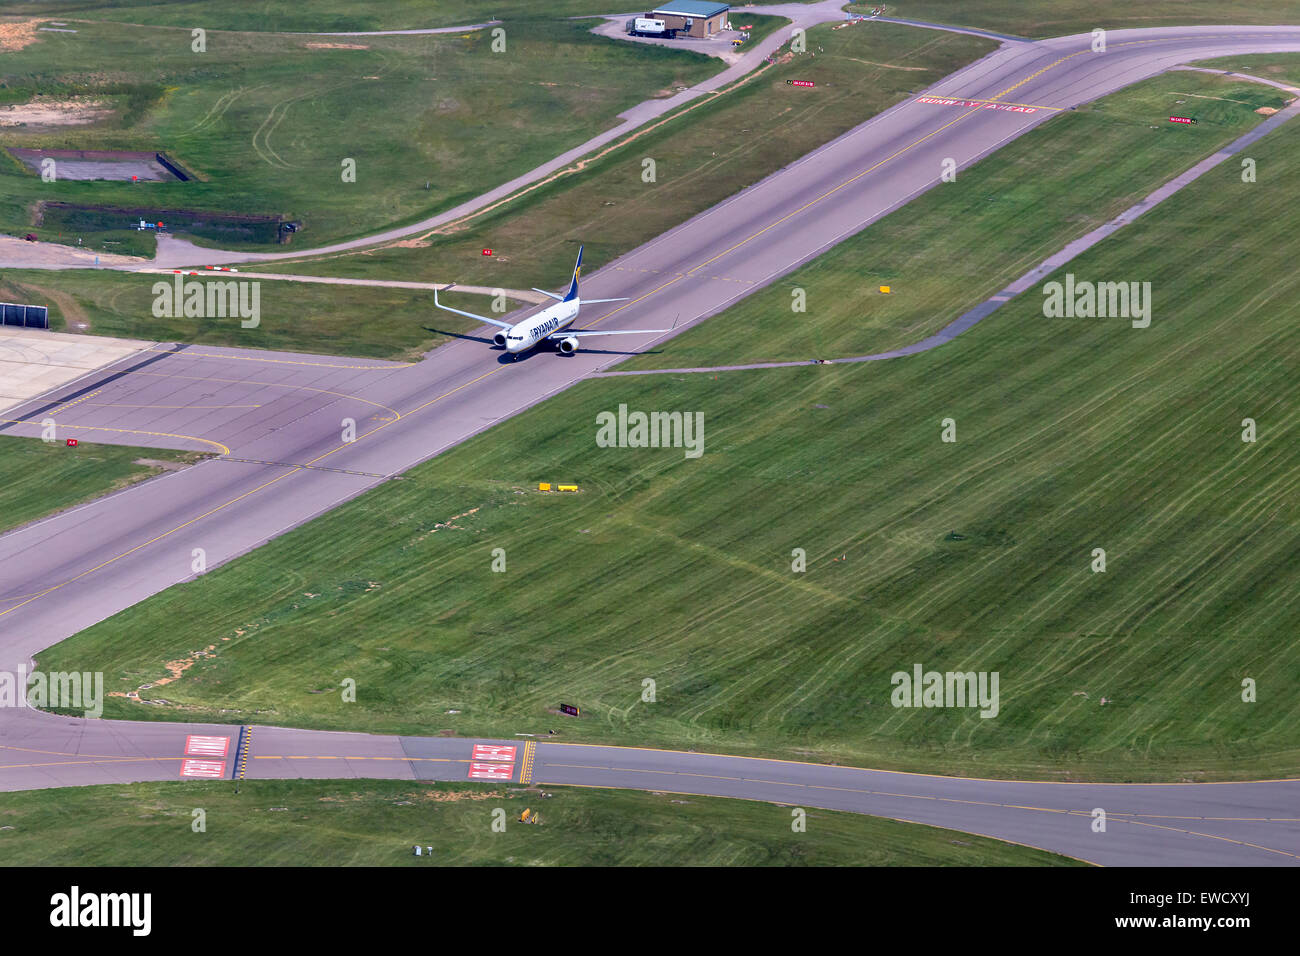 Aeropuerto de Luton Aeropuerto, Vista aérea sobrecarga. Una rodadura JET RYANAIR después de aterrizar en el aeropuerto de Luton Foto de stock